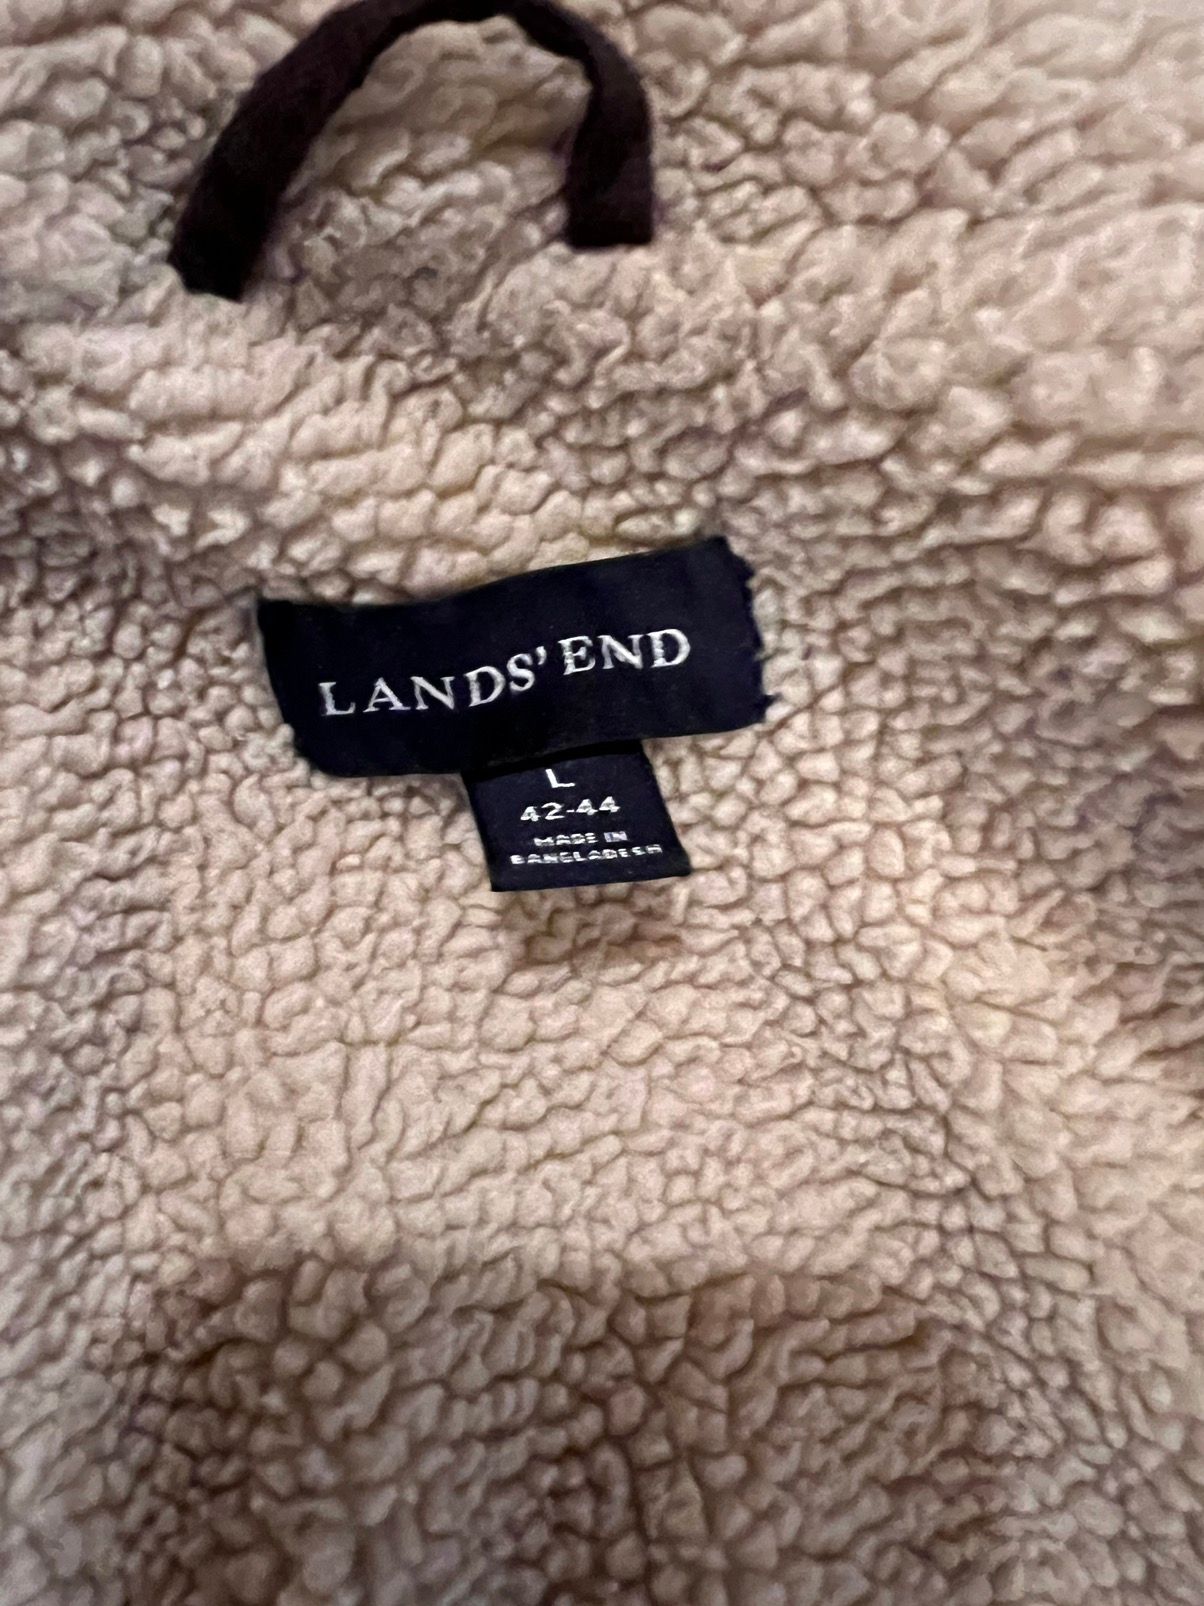 Lands End Lands end men’s parka jacket (Missing Hood) Size US L / EU 52-54 / 3 - 6 Thumbnail